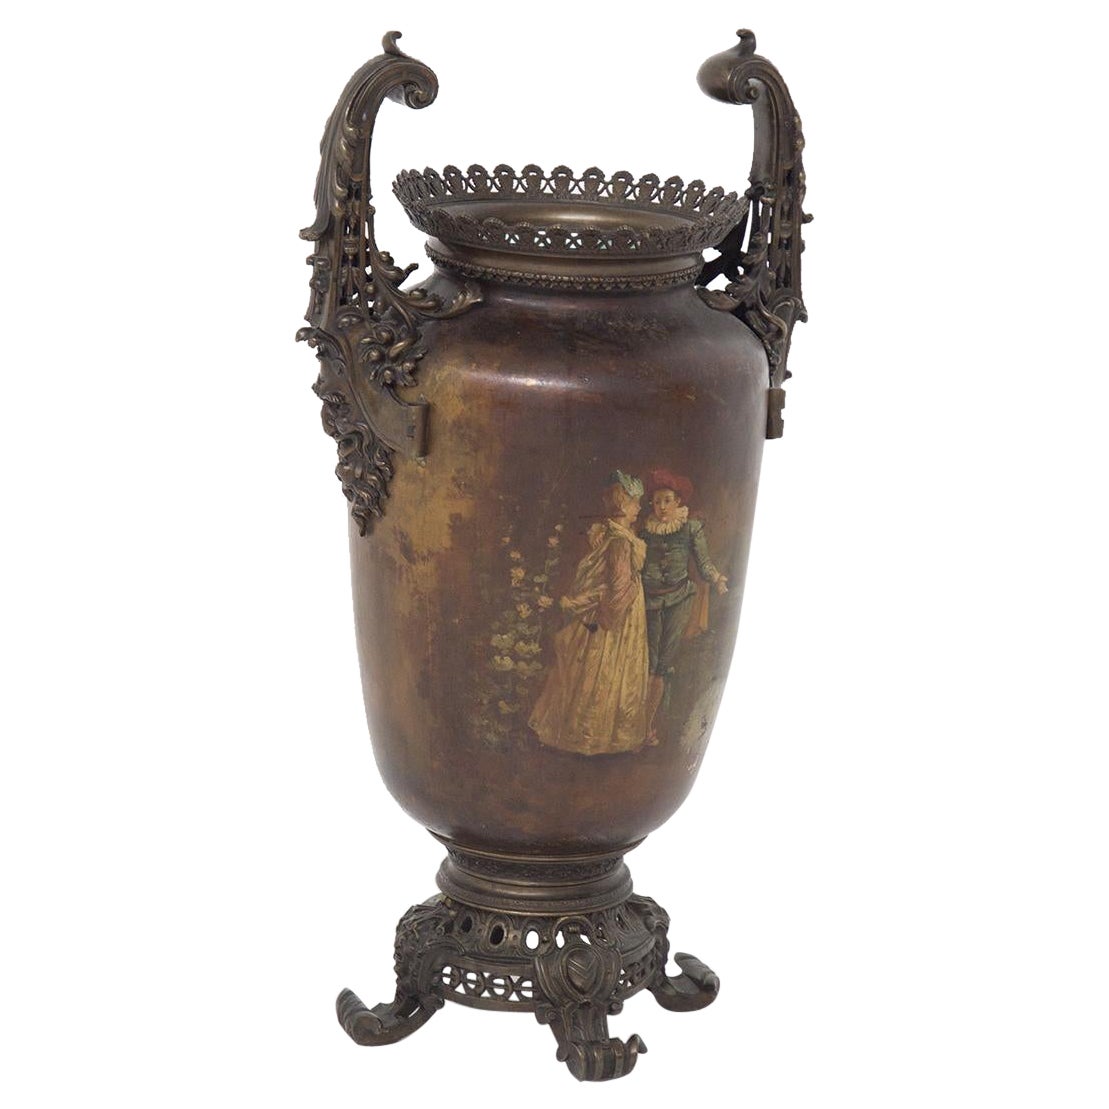 Grand vase en bronze peint de style Art nouveau